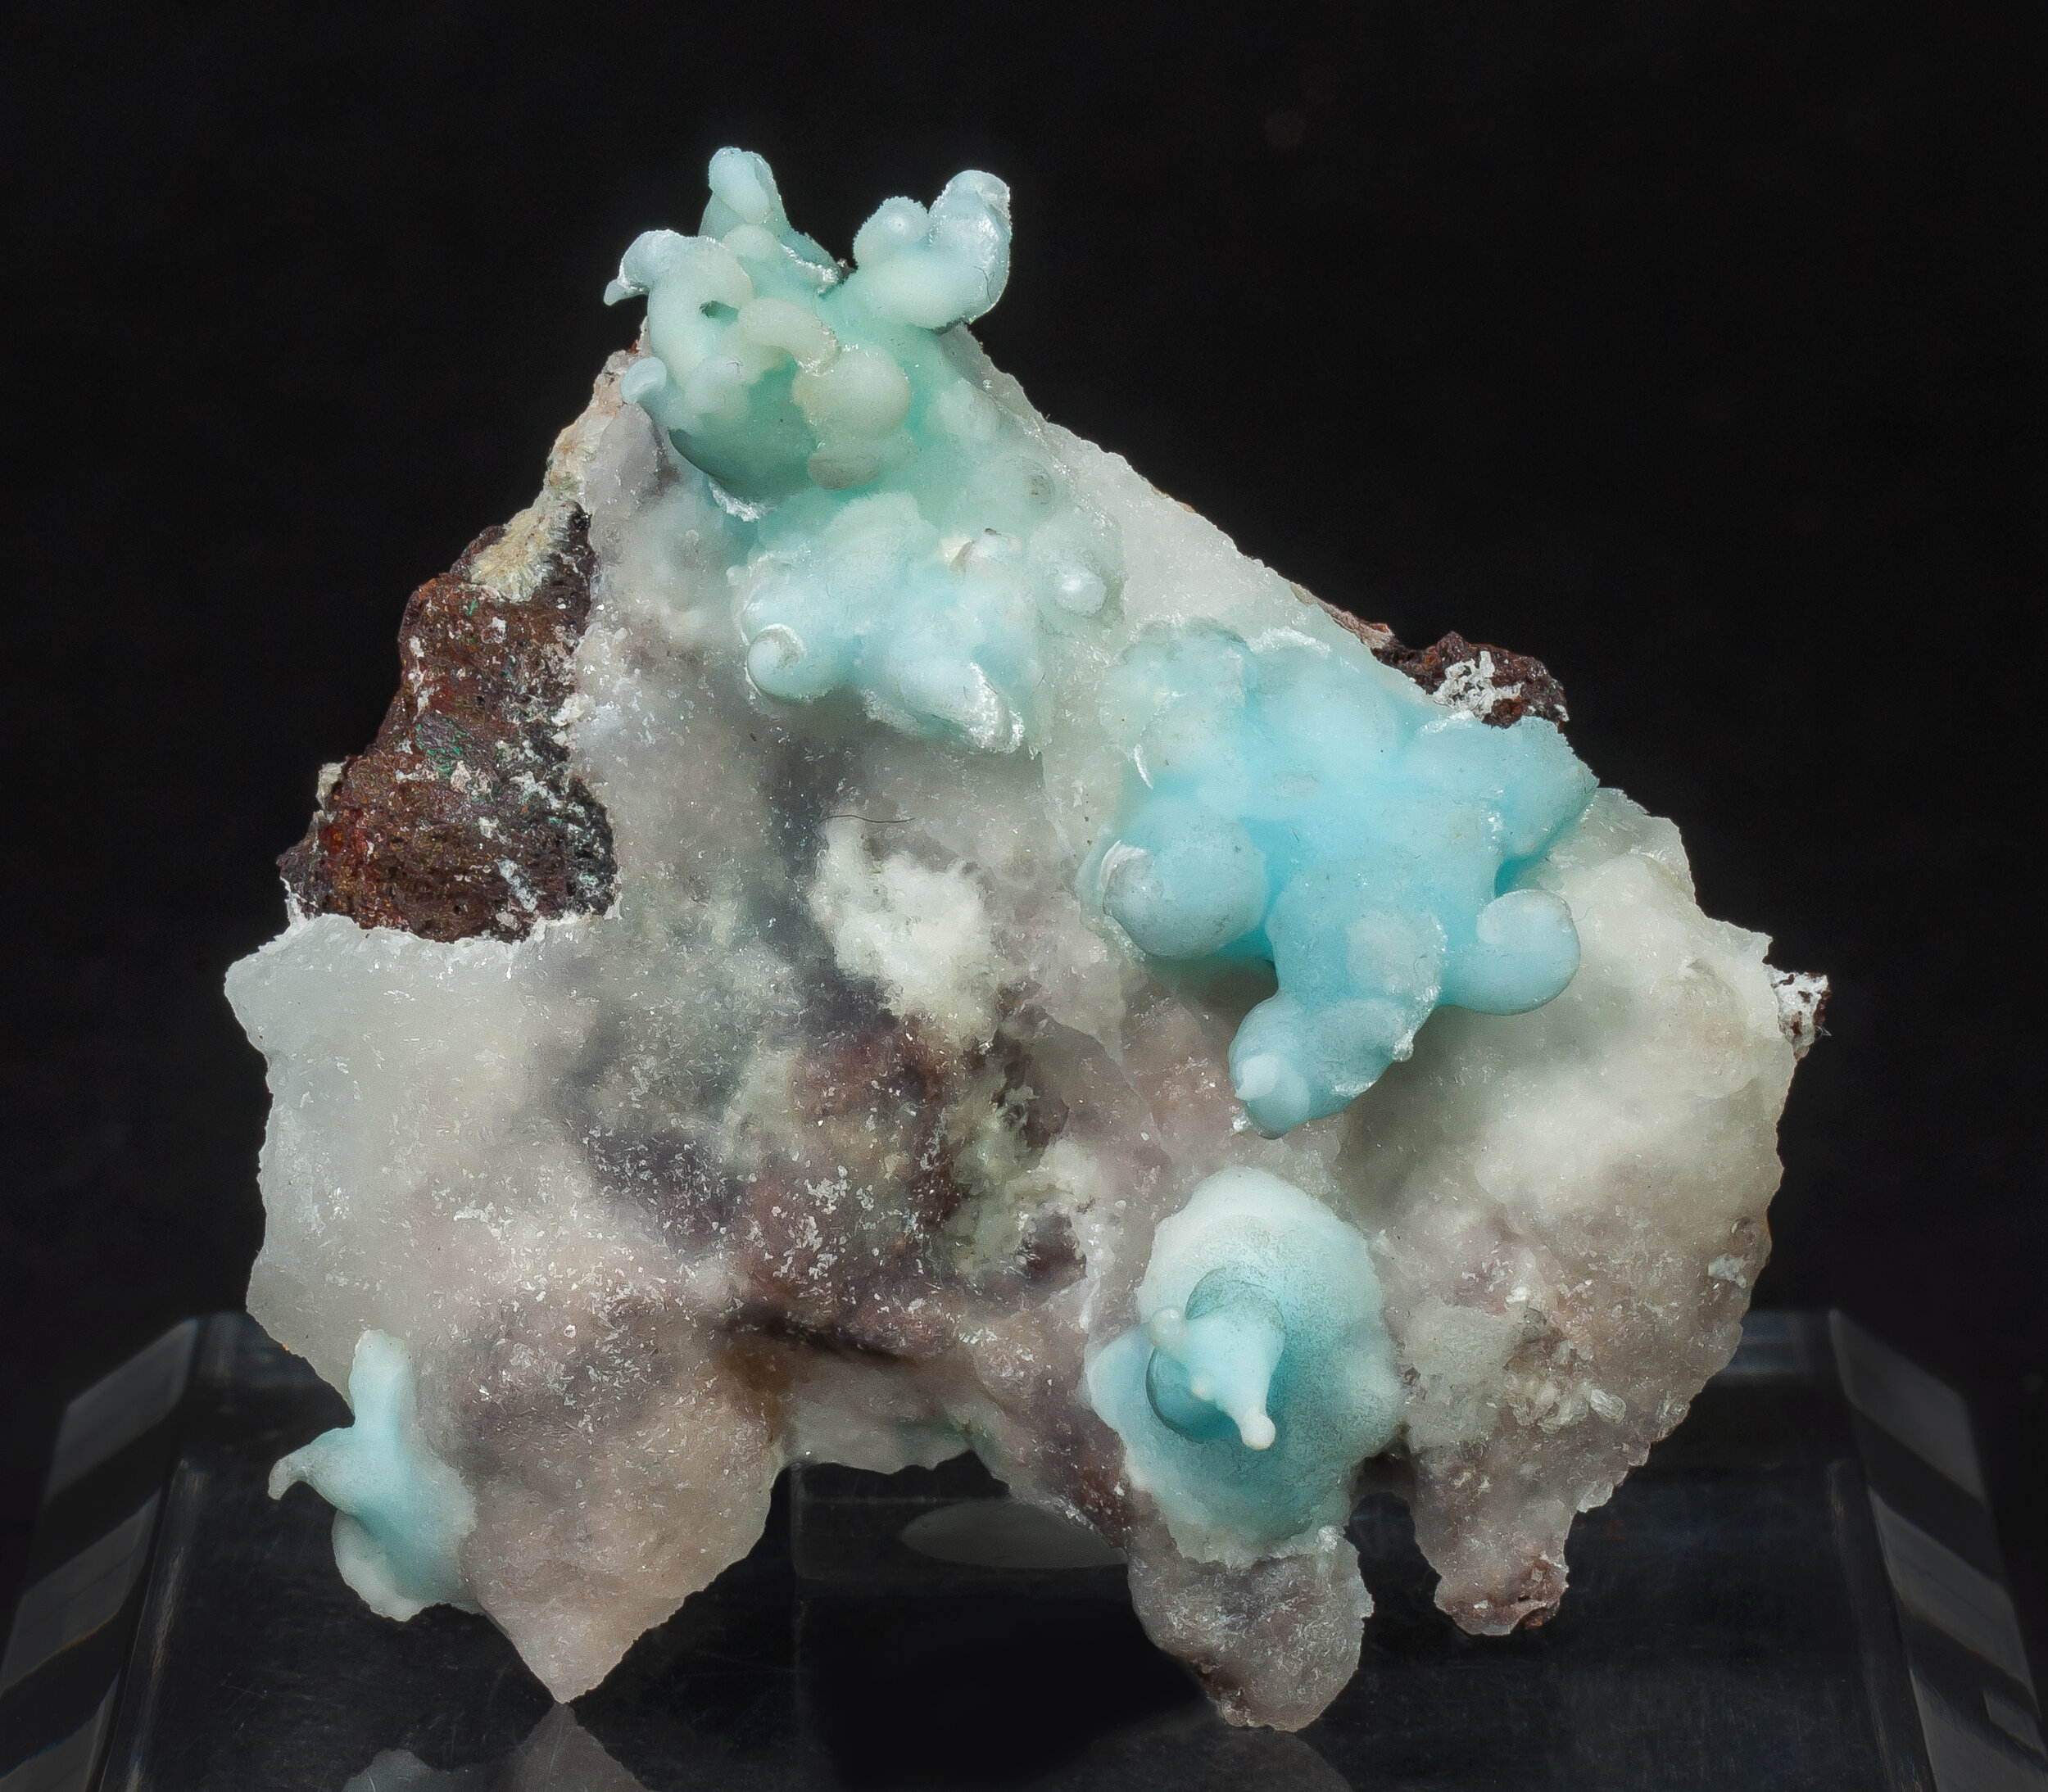 specimens/s_imagesAO1/Aragonite-EQM13AO1f.jpg